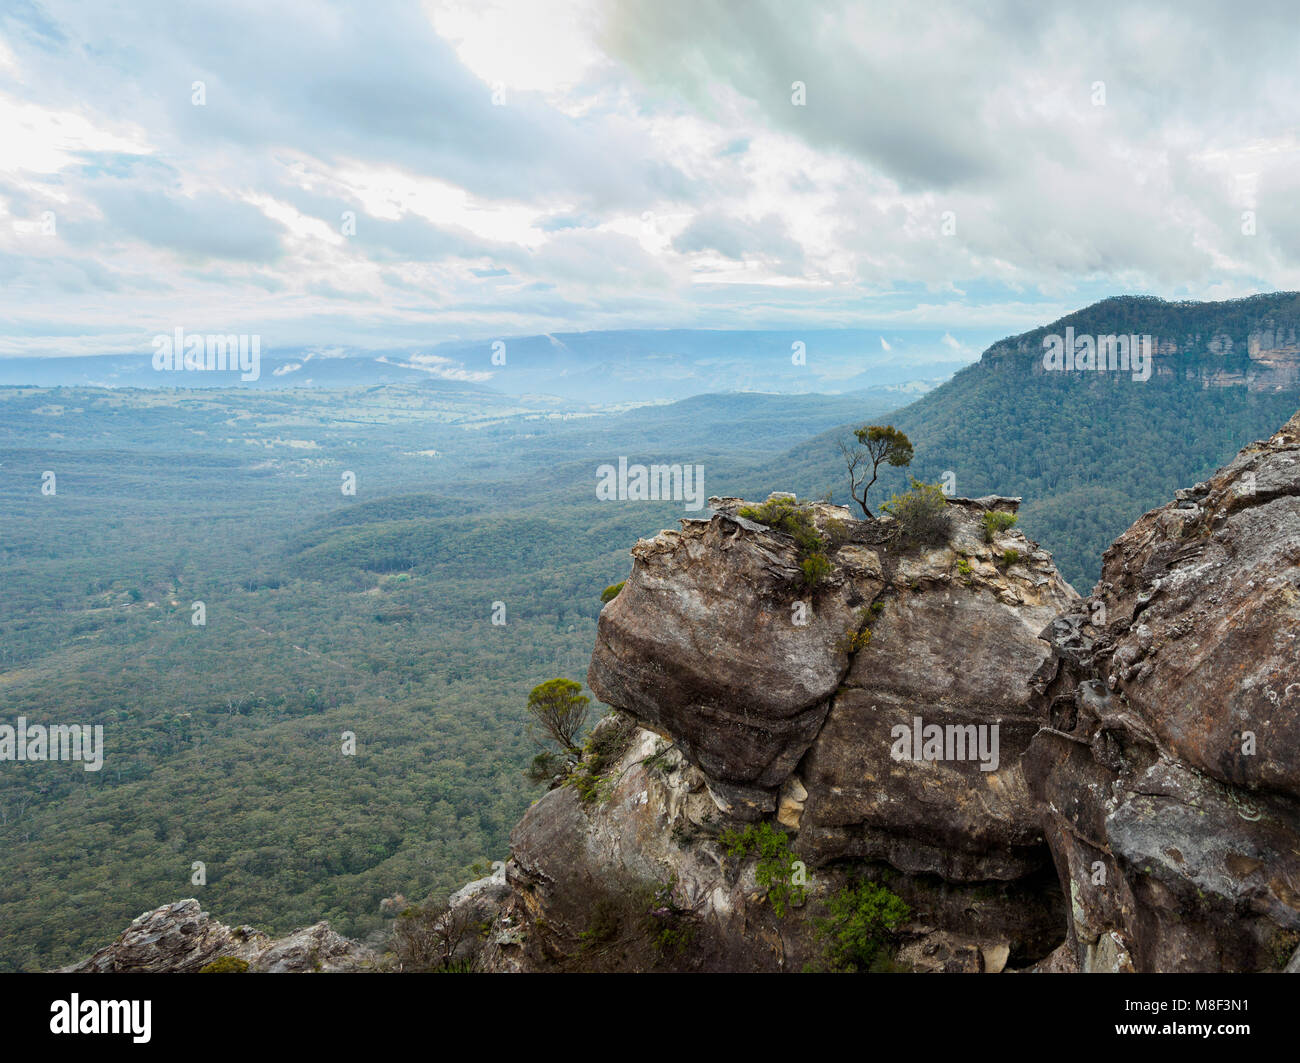 L'Australie, Nouvelle Galles du Sud, Katoomba, vaste vallée entourée de hautes roches Banque D'Images